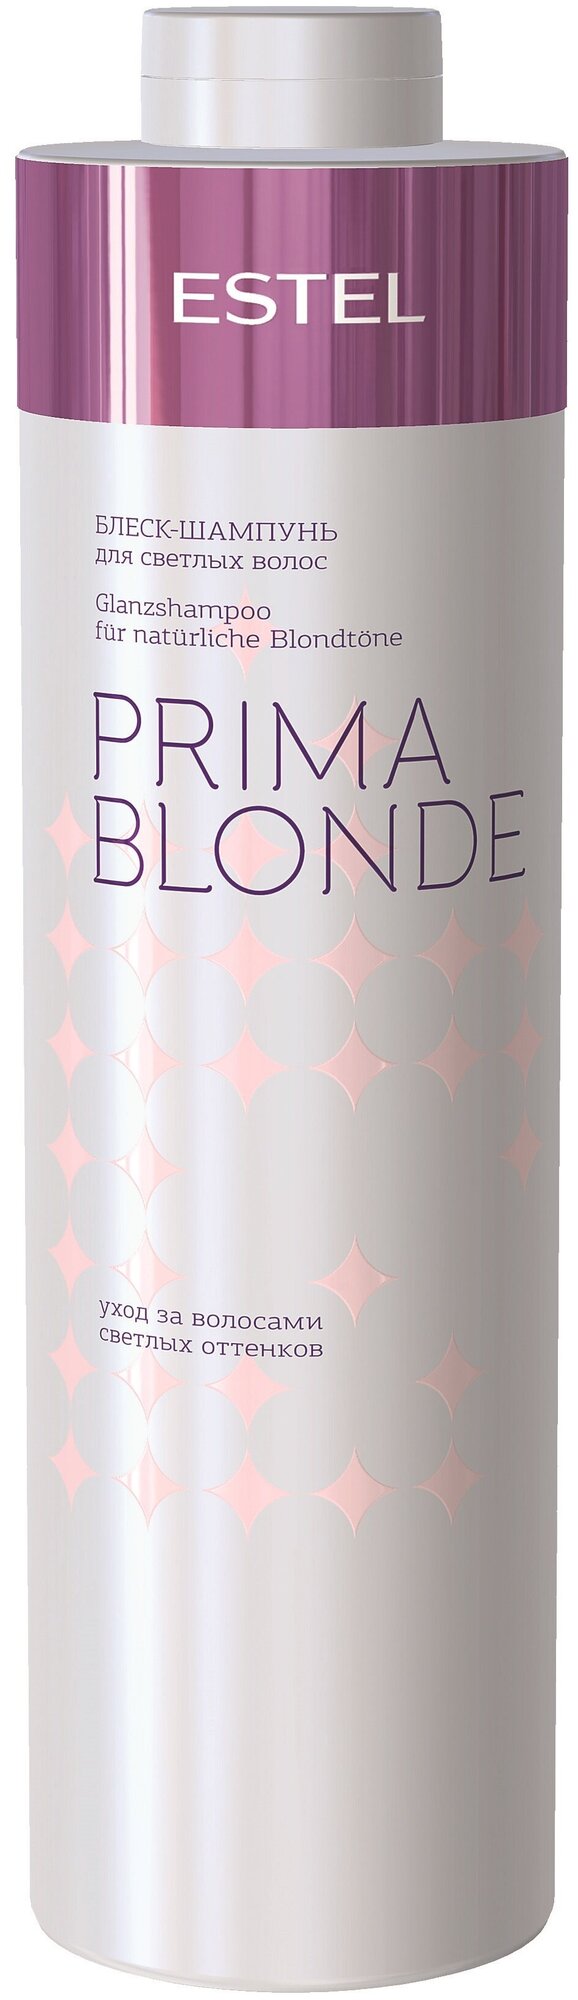 ESTEL PRIMA BLONDE набор Блеск-шампунь для светлых волос 1000 мл + серебристый Бальзам для холодных оттенков блонд 1000 мл